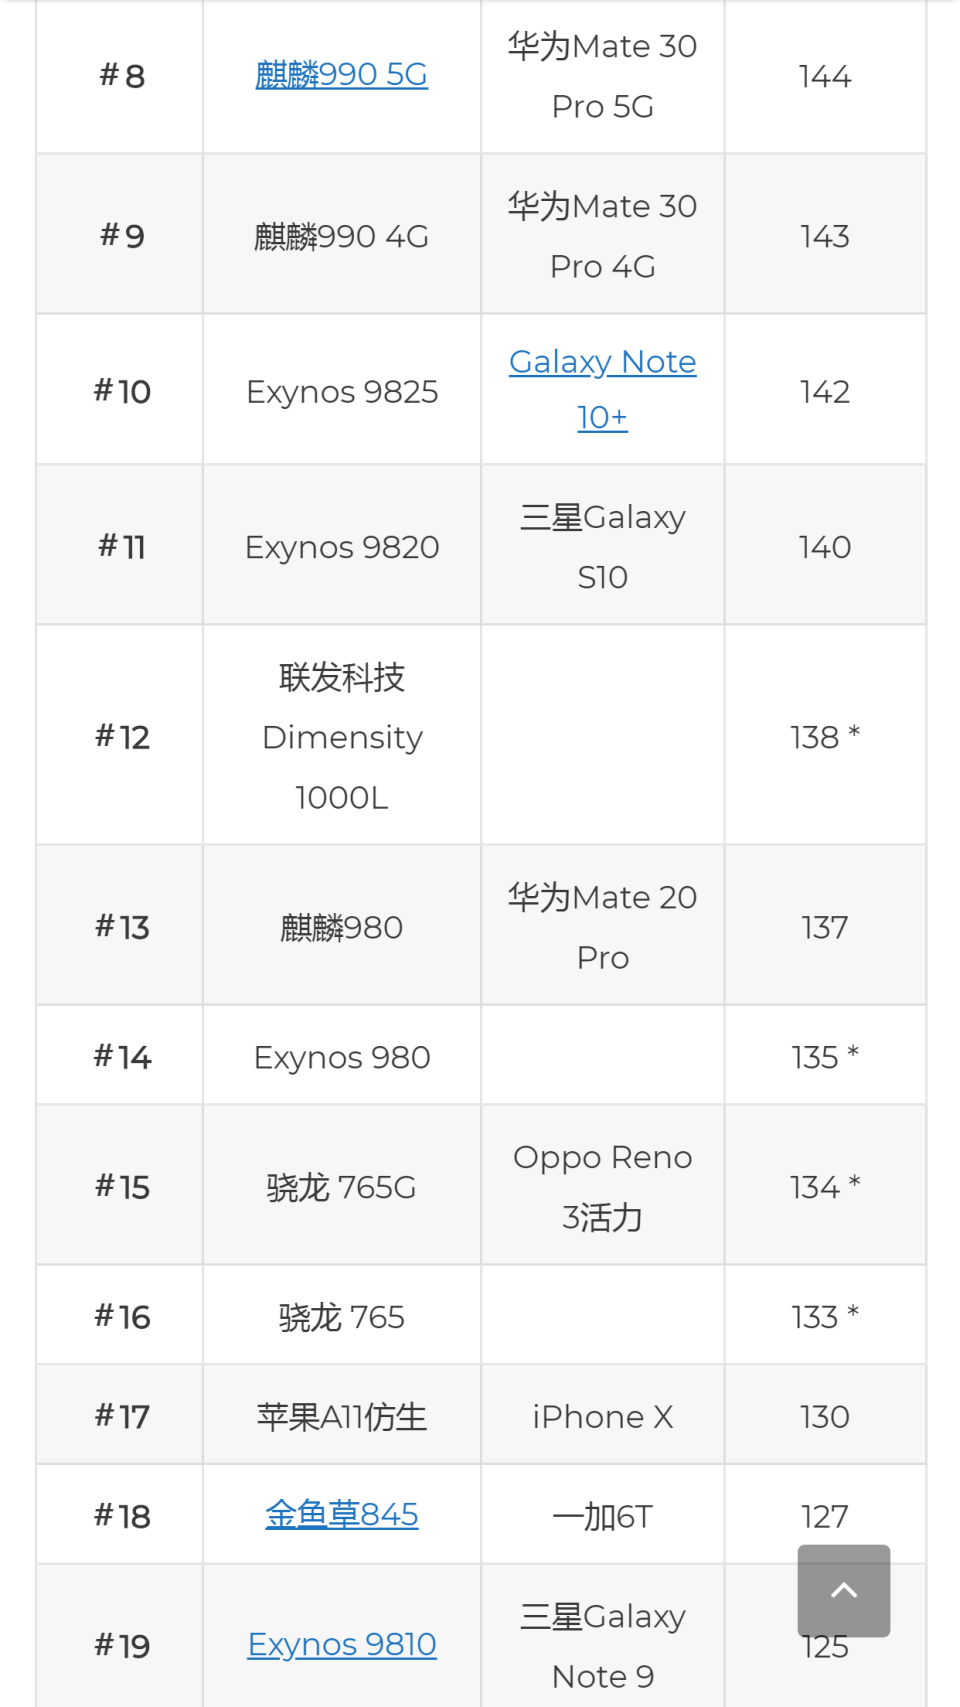 2020手机芯片榜发布华为麒麟9905g跌至第八苹果a13稳居榜首